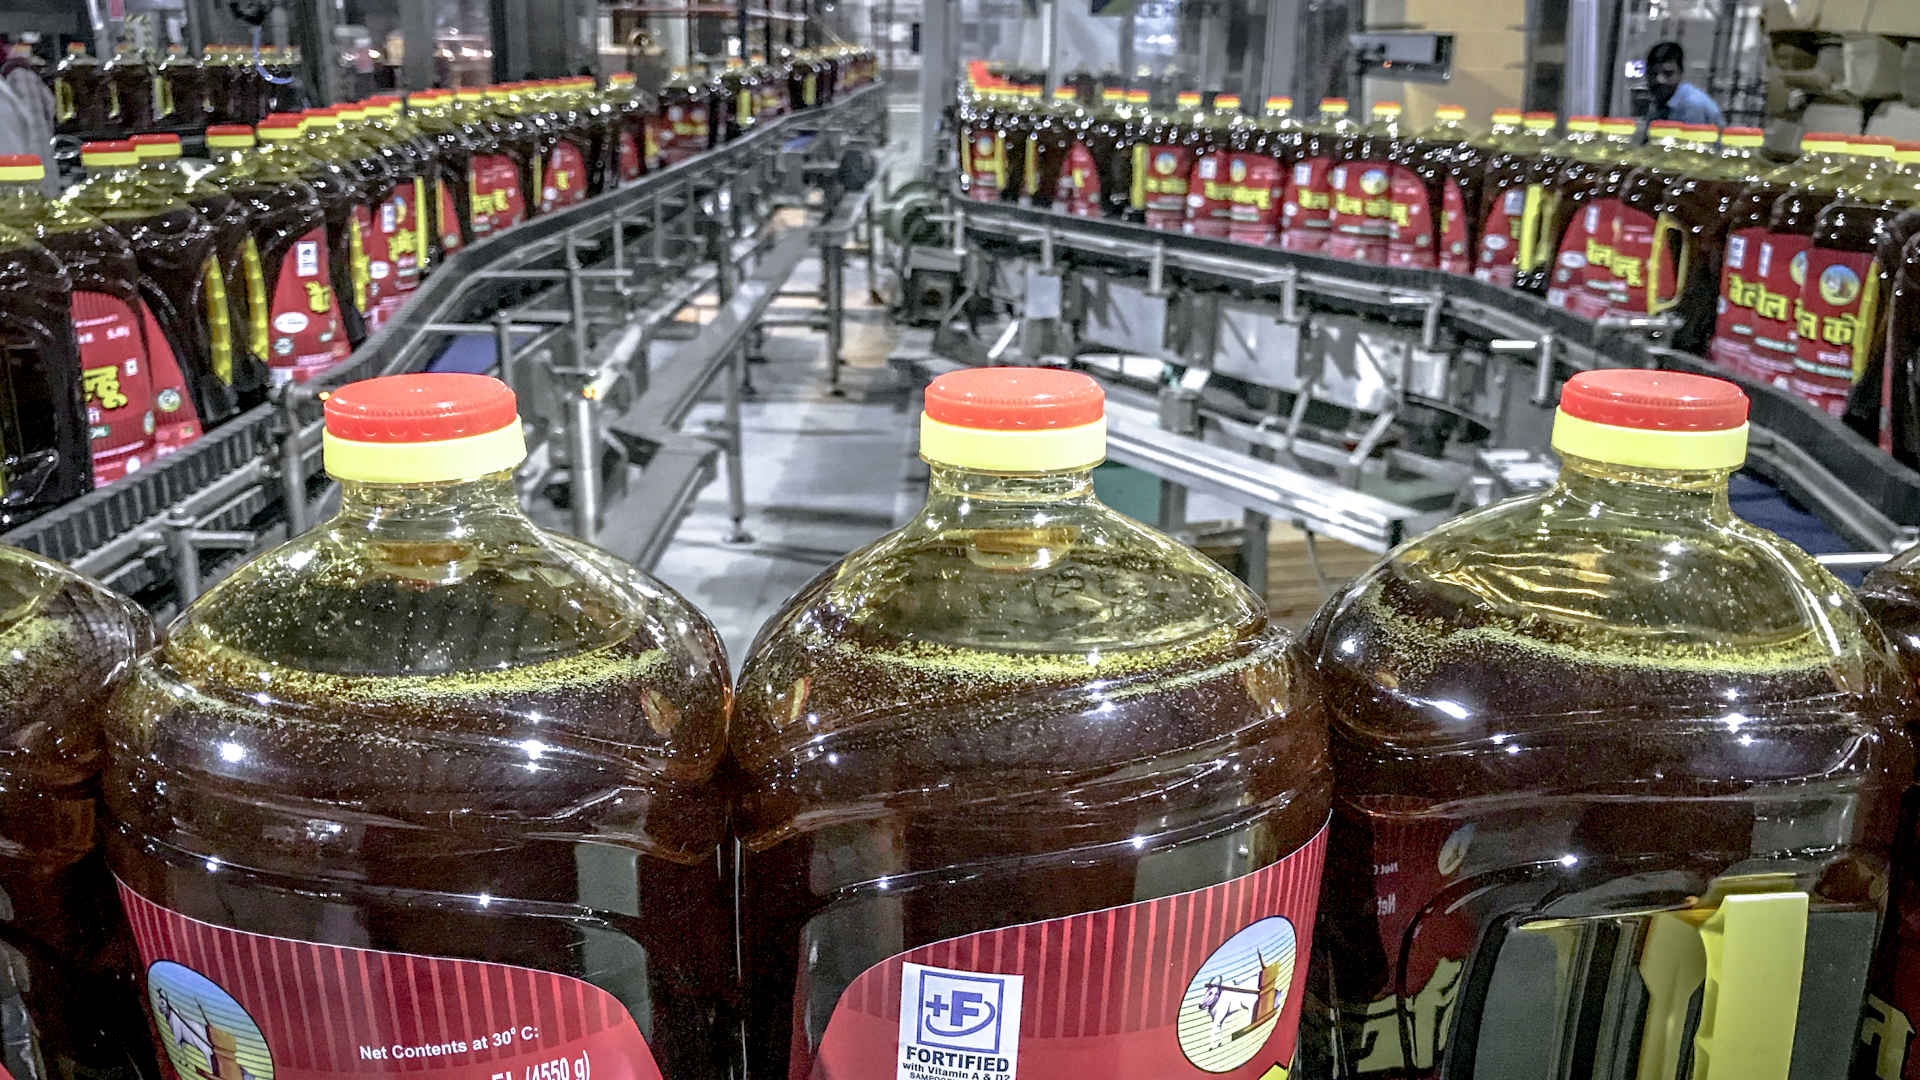 Sidel elabora ligera botella de PET para el envase de aceites comestibles